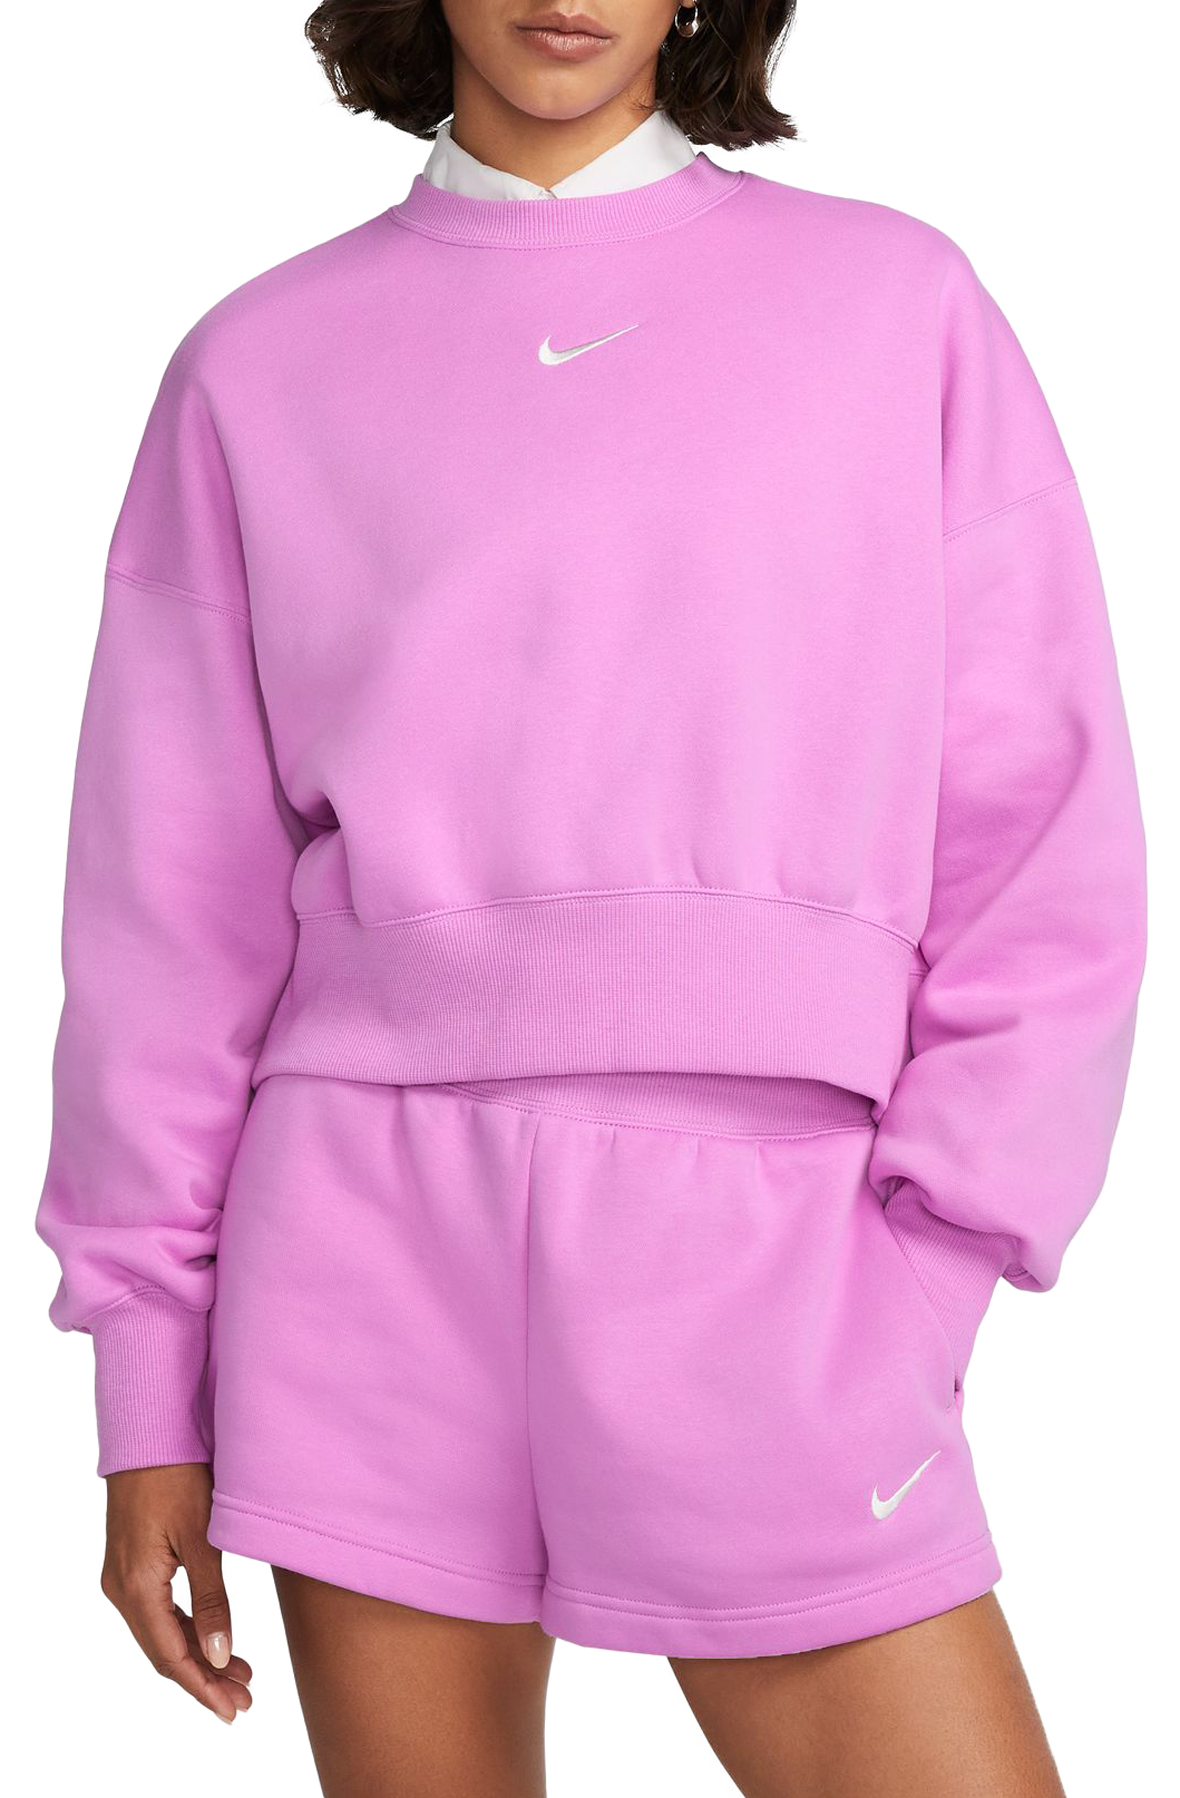 Nike Sportswear Phoenix Blue Crewneck Sweatshirt